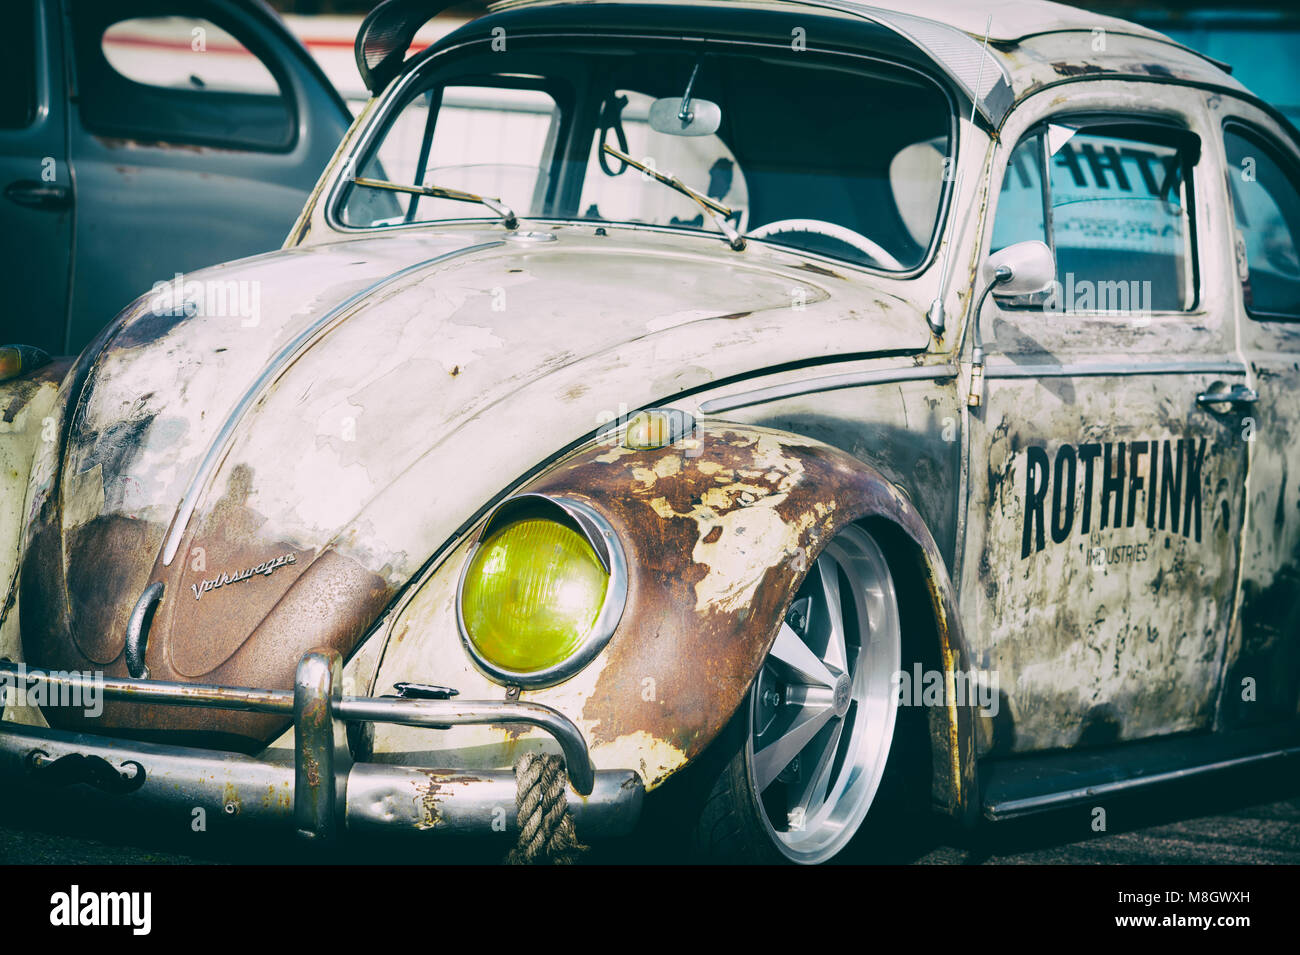 Rusty Rat VW Coccinelle voiture. La conduite à gauche style rat beetle.  Vintage filtre appliqué Photo Stock - Alamy